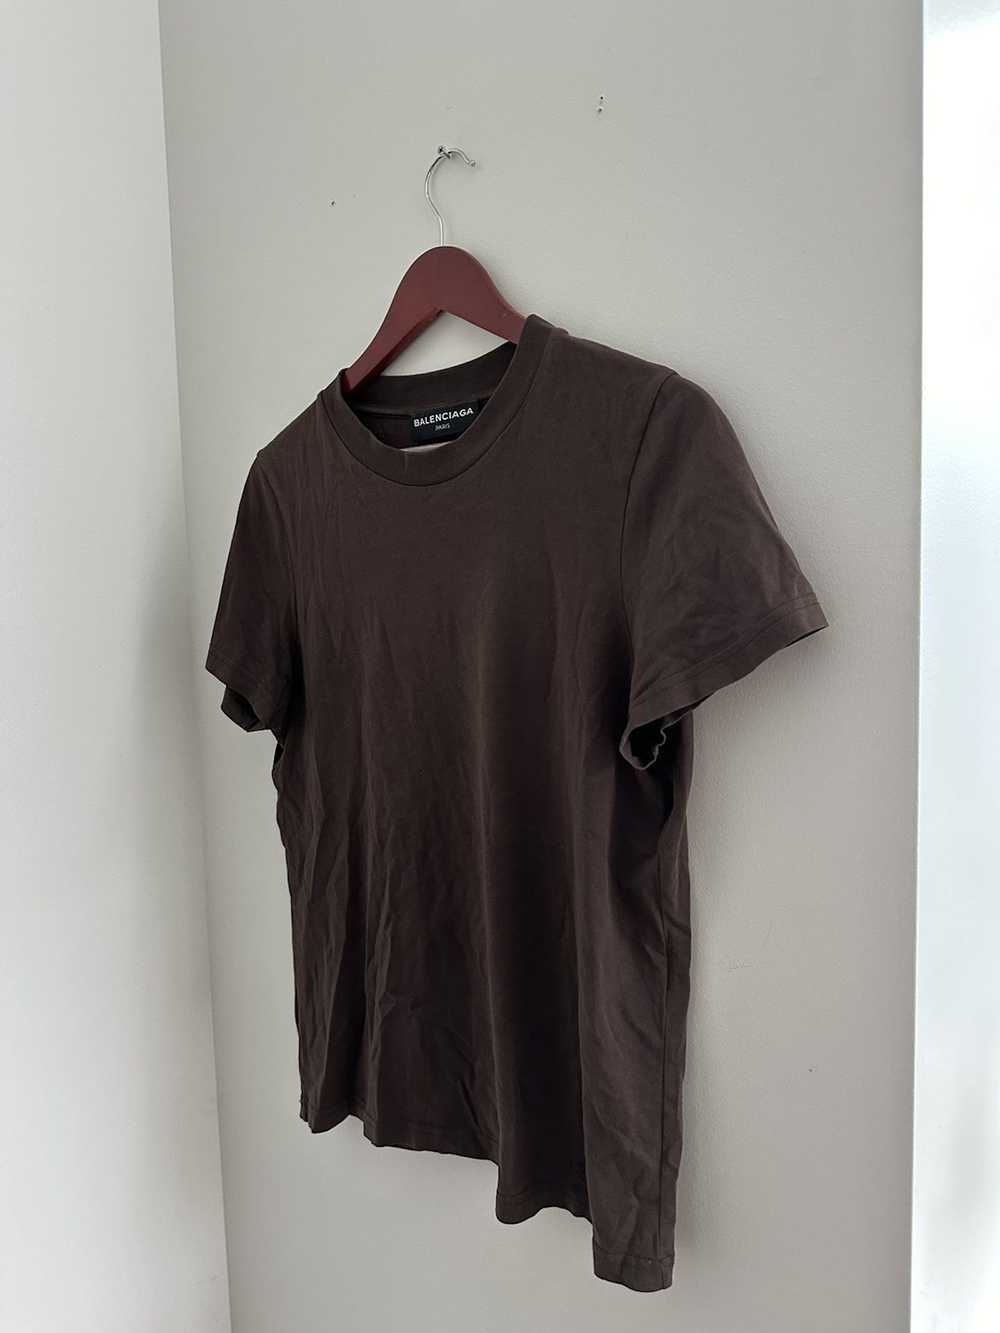 Balenciaga Balenciaga Unisex Size (XL) T-Shirt - image 2